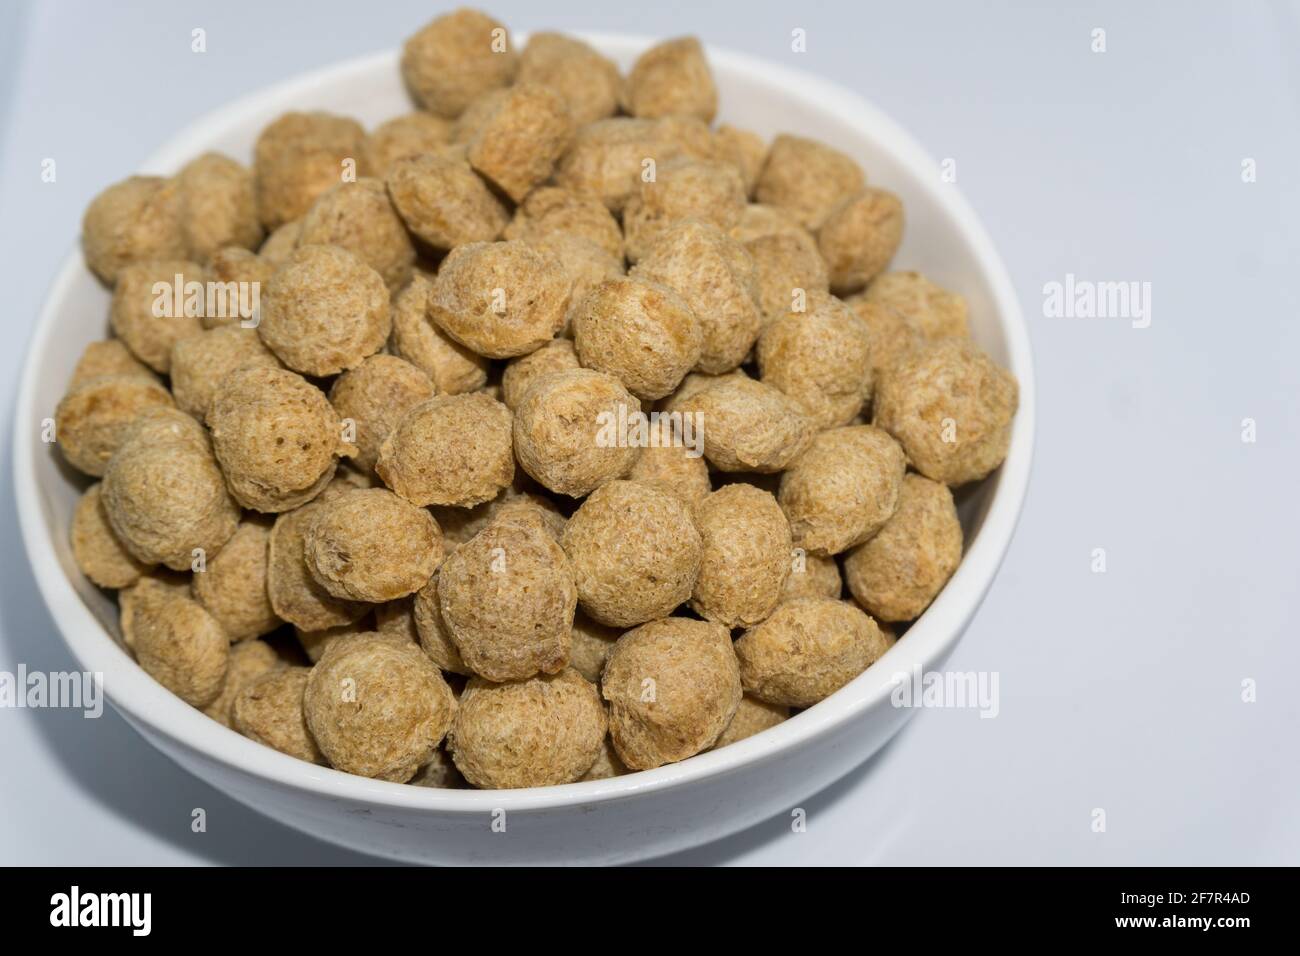 Eine Nahaufnahme von Sojabohnennuggets in einer Schüssel mit weißem Hintergrund. Vor allem für Veganer sind Sojabaggets eine reiche Proteinquelle. Stockfoto